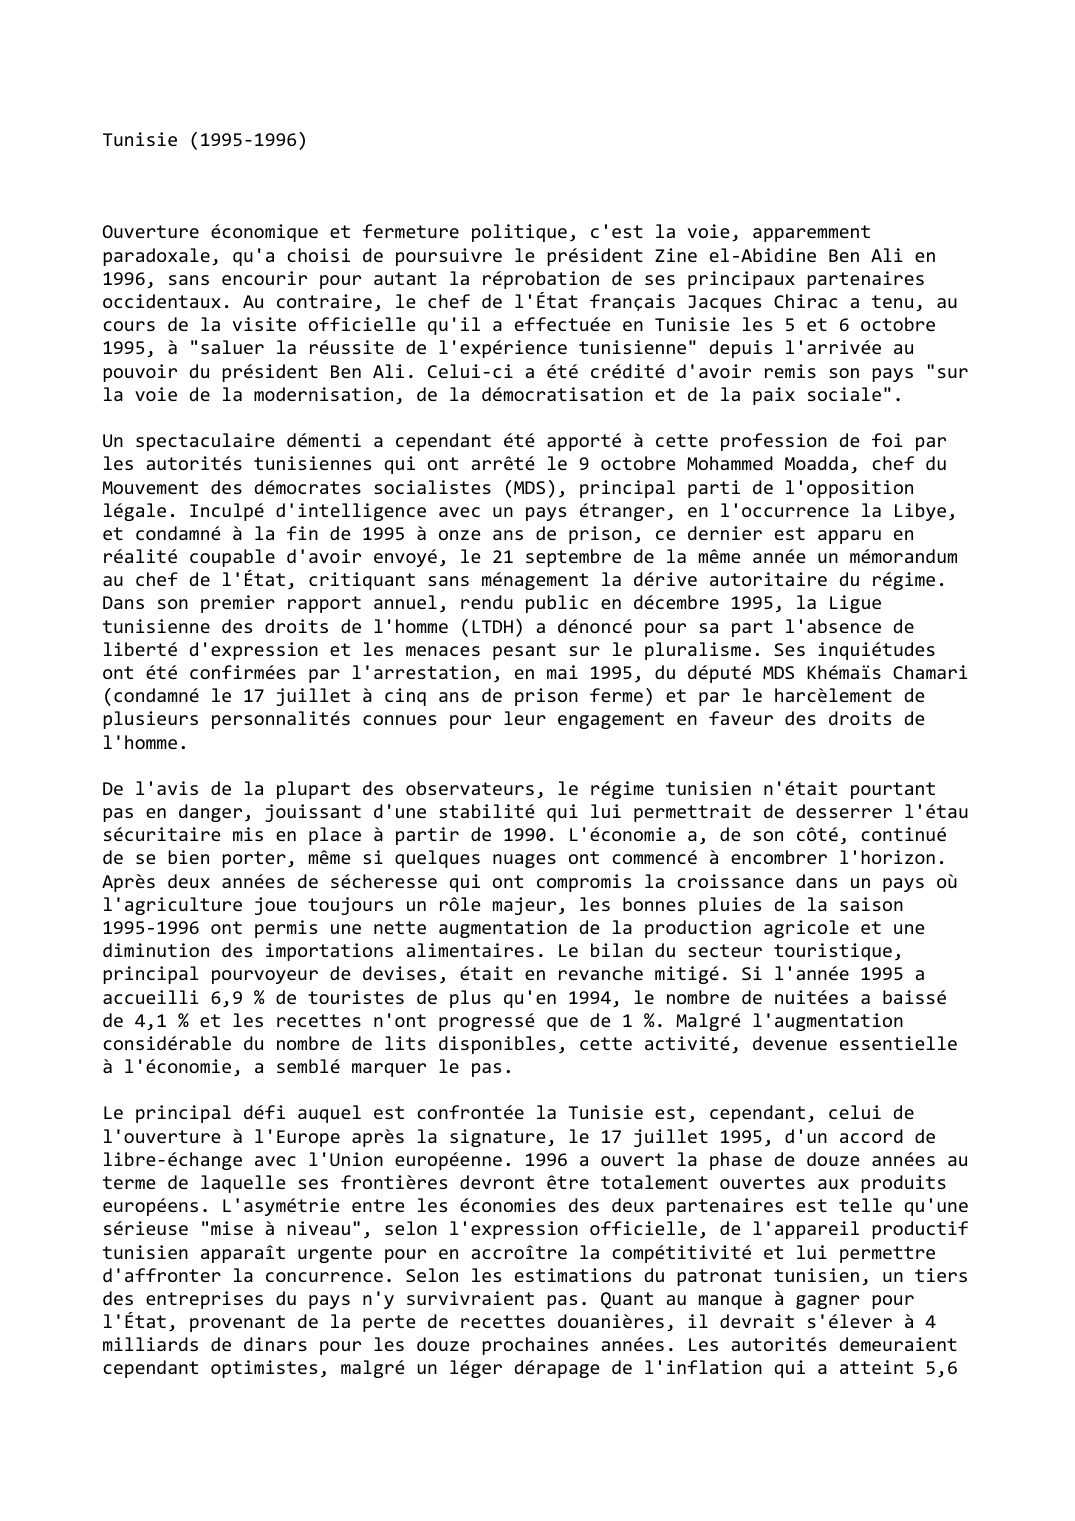 Prévisualisation du document Tunisie (1995-1996)